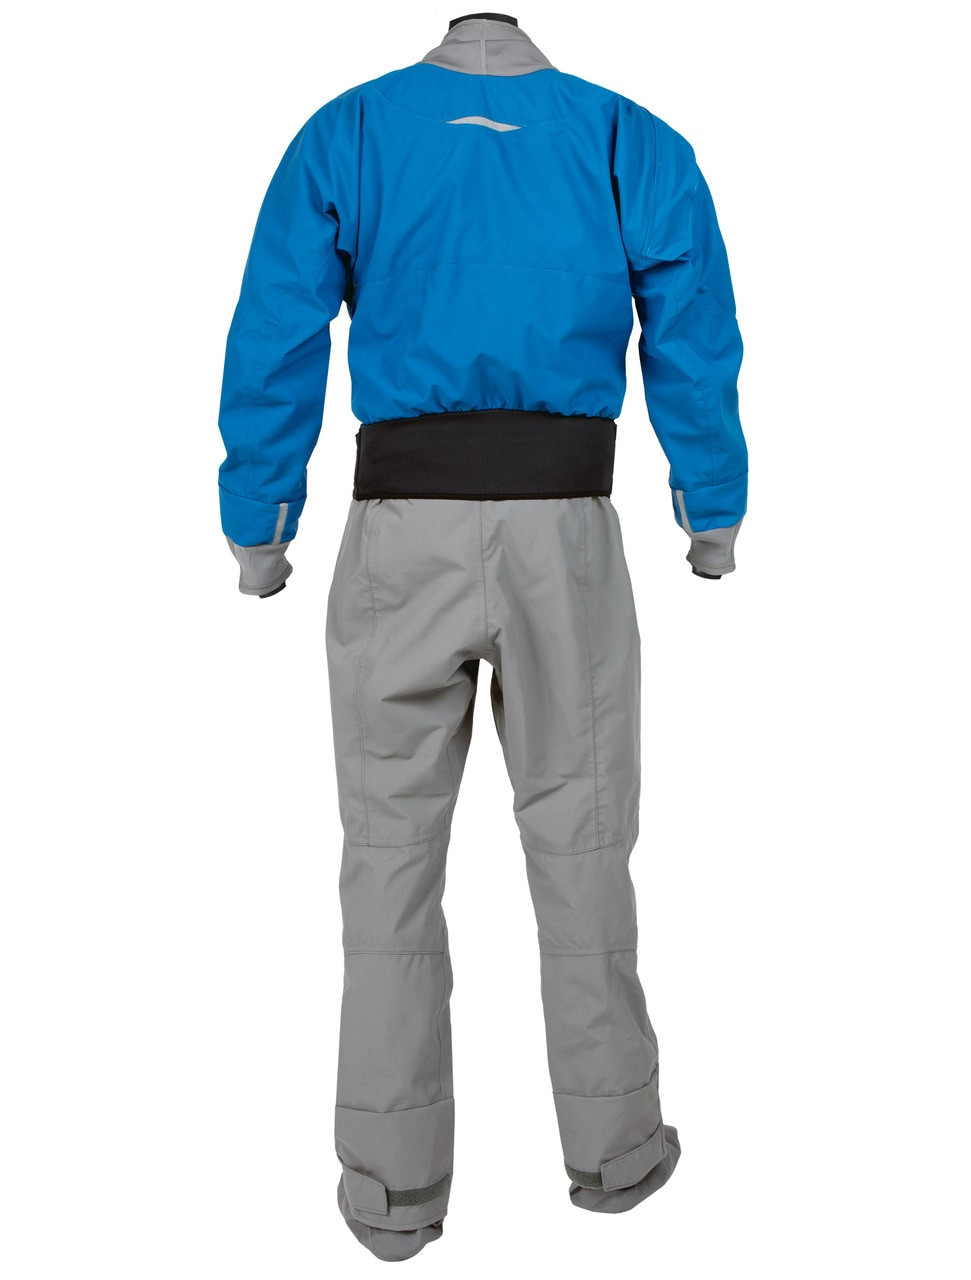 Kokatat Men's Meridian Gore-Tex PRO Dry Suit w/Relief Zipper